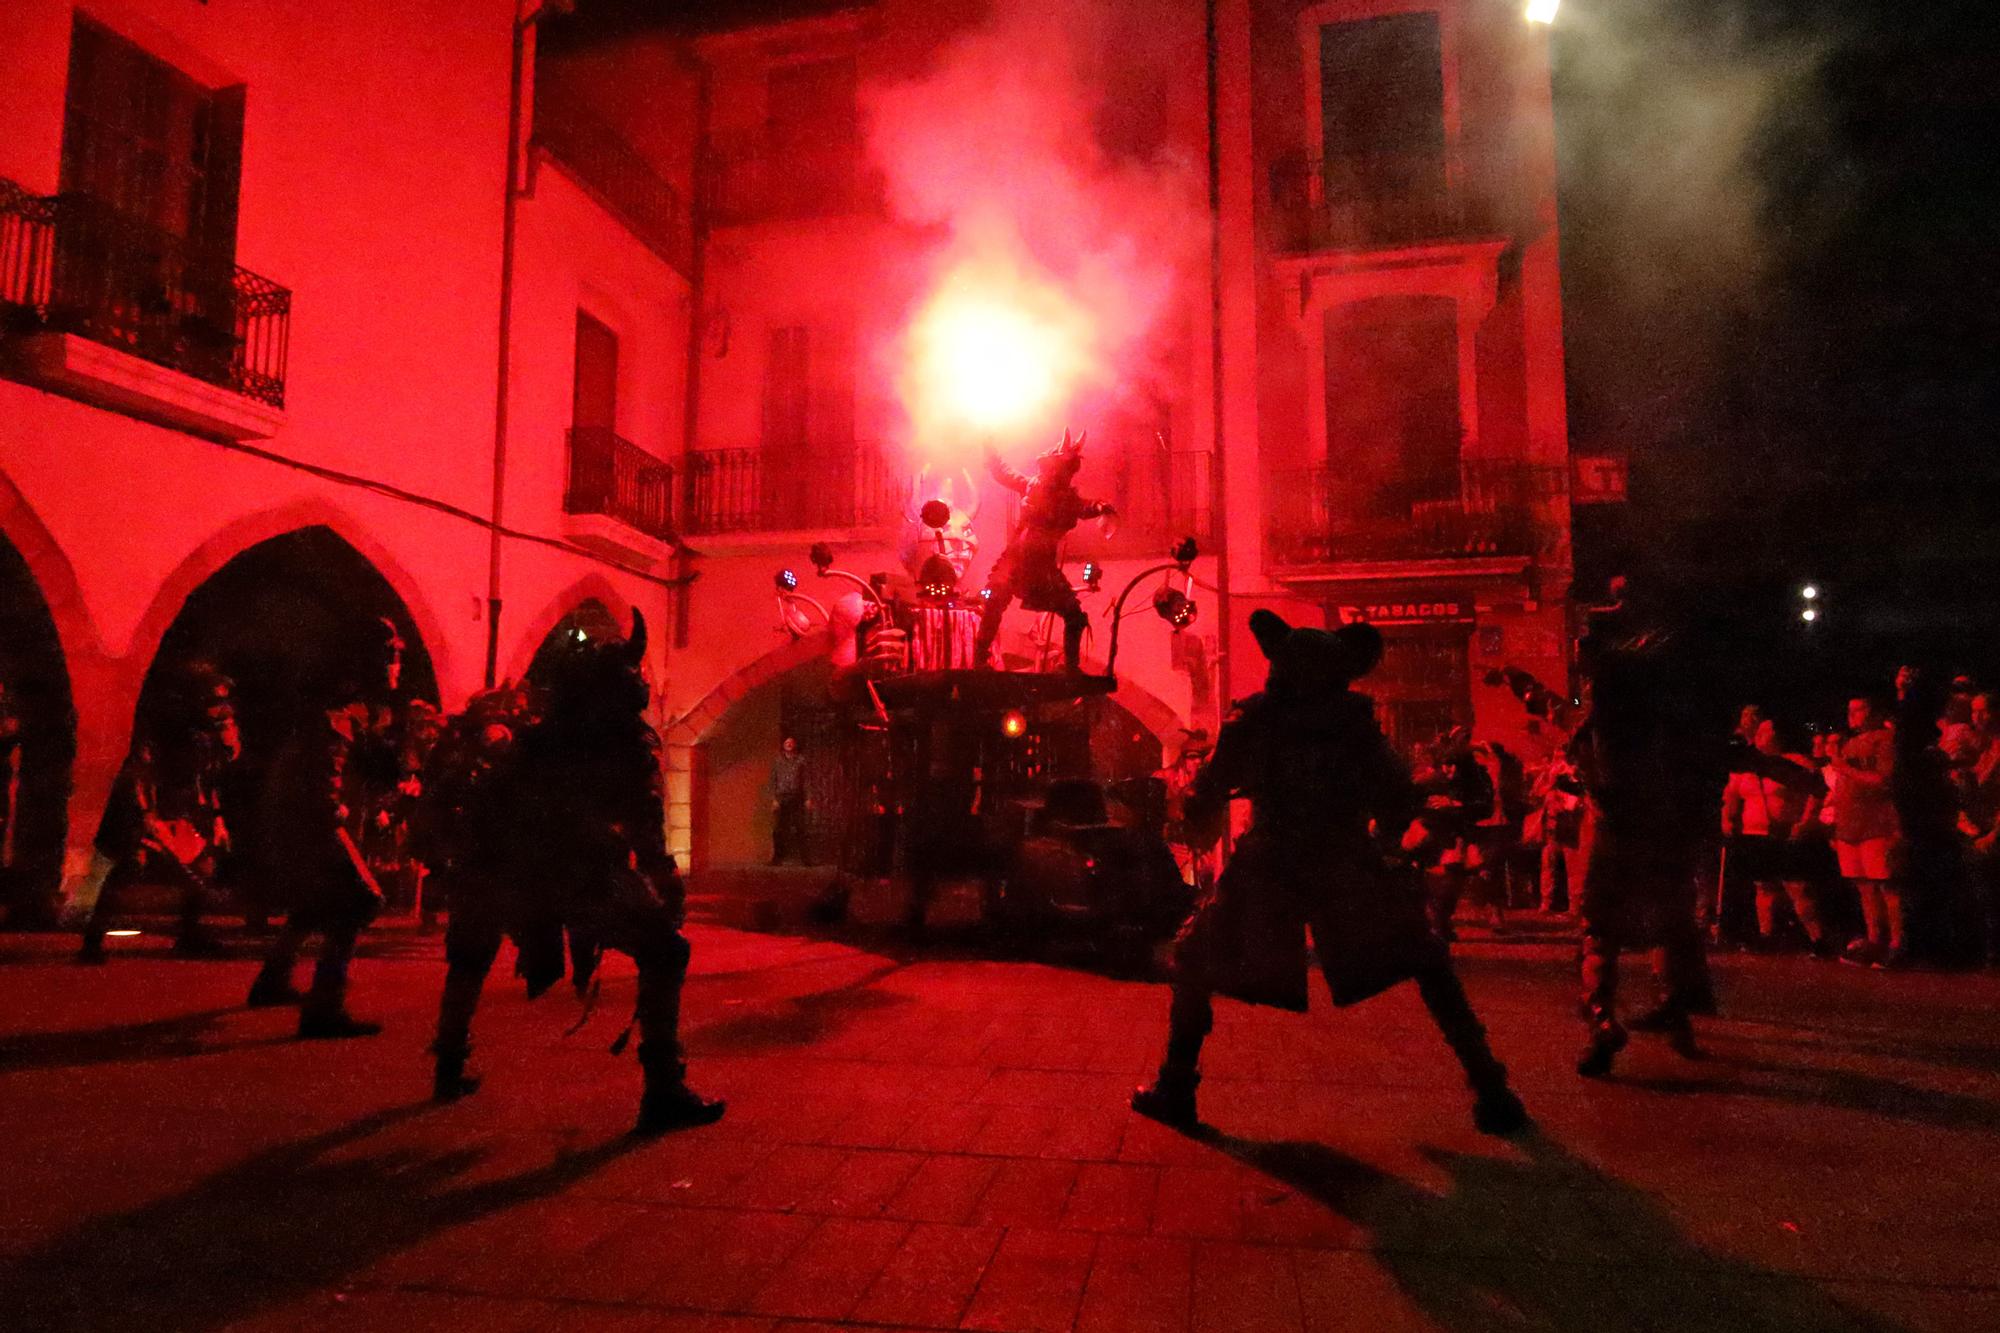 GALERÍA: Las mejores imágenes de los 'correfocs' el último día de fiestas en Vila-real